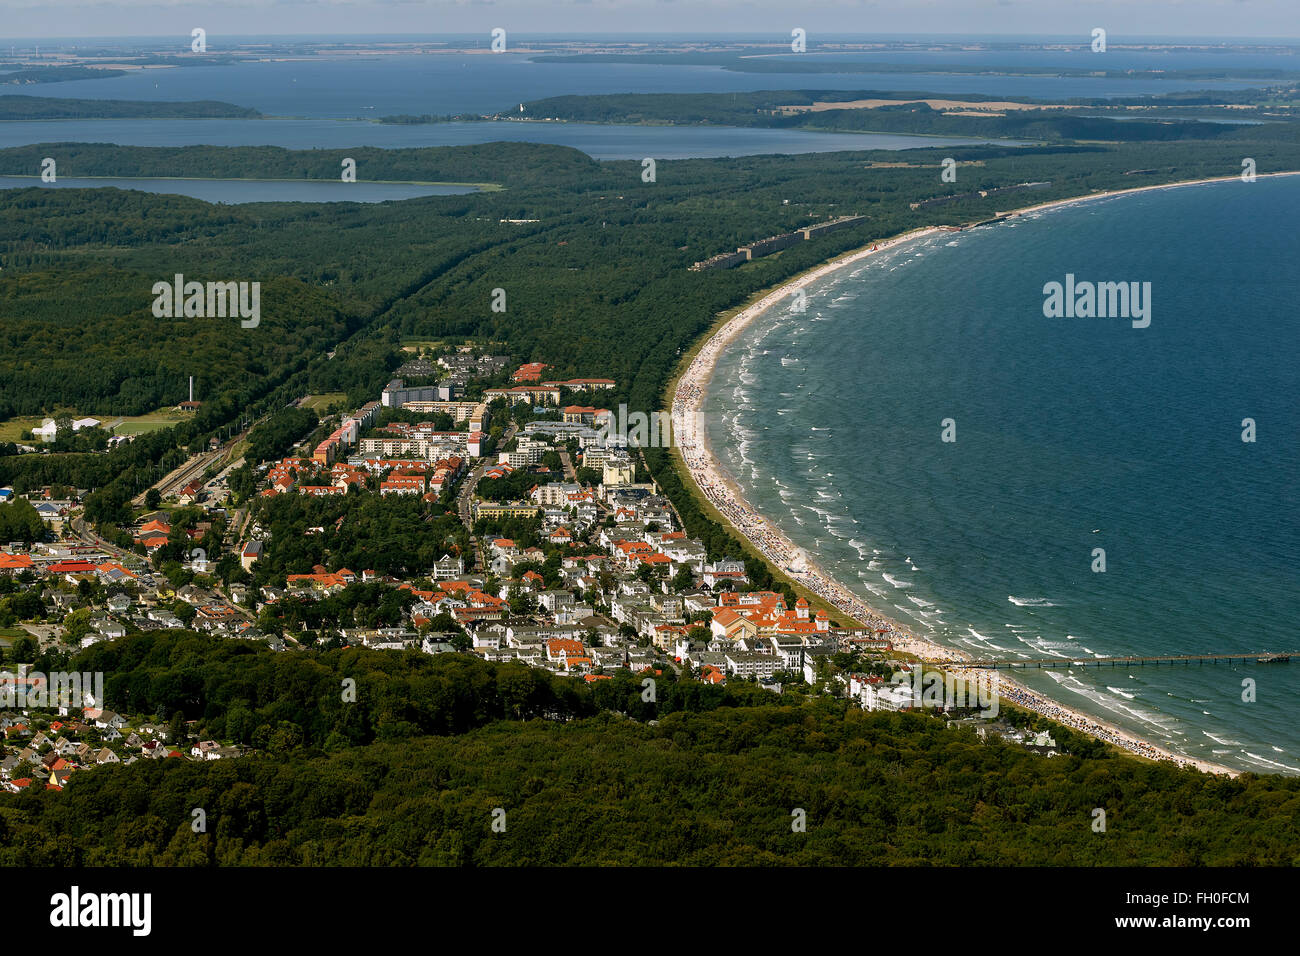 Vista aerea, la spiaggia e gli investitori di Binz, Lancken-Granitz, con una spiaggia di sabbia, Binz, Ruegen isola, Mar Baltico, Mar Baltico Foto Stock